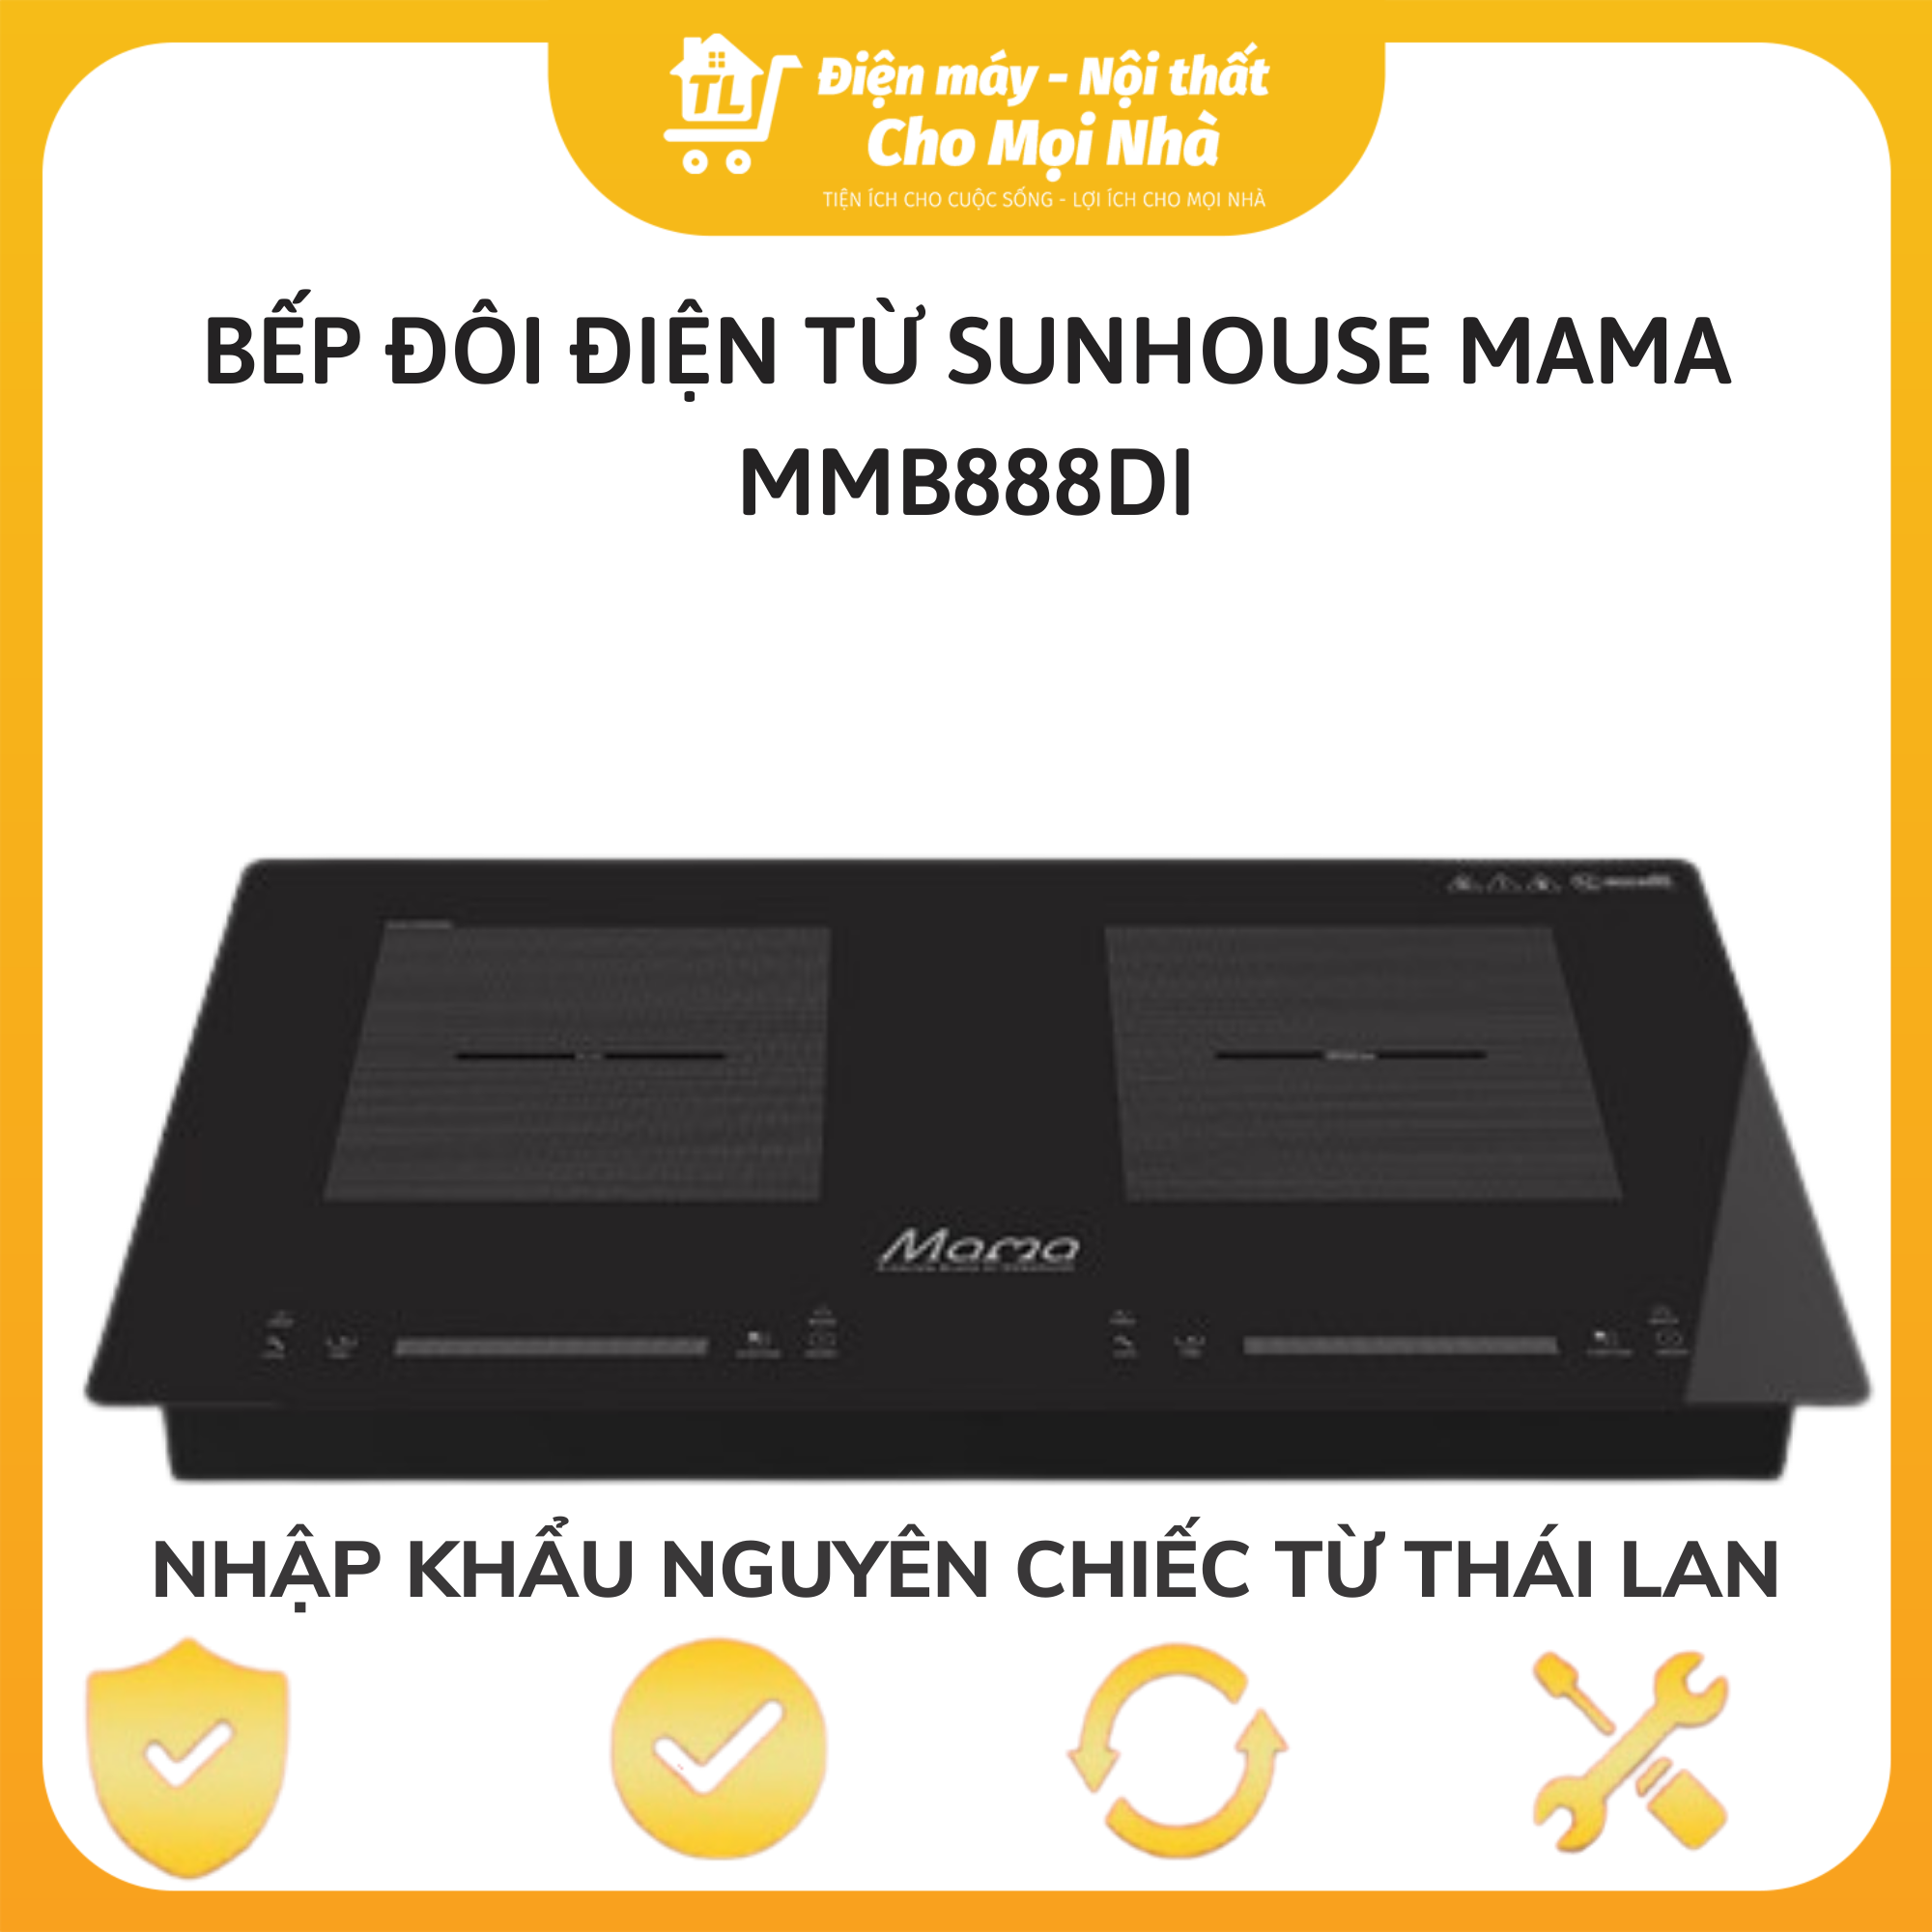 Bếp Đôi Điện Từ Cảm Ứng Inverter Sunhouse MAMA MMB888DI - Nhập Khẩu Thái Lan